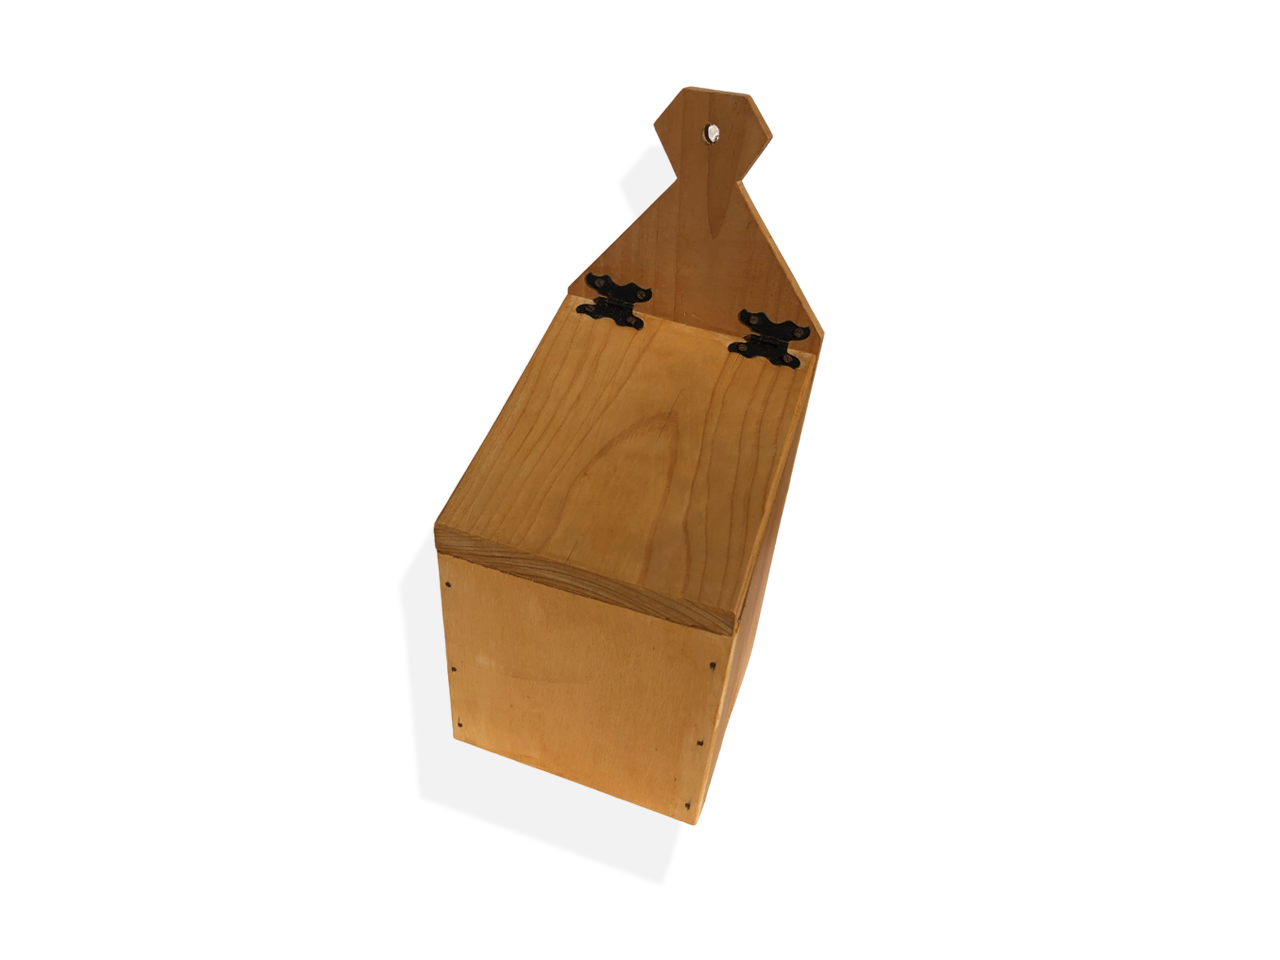 Porta oggetti in legno, con coperchio.